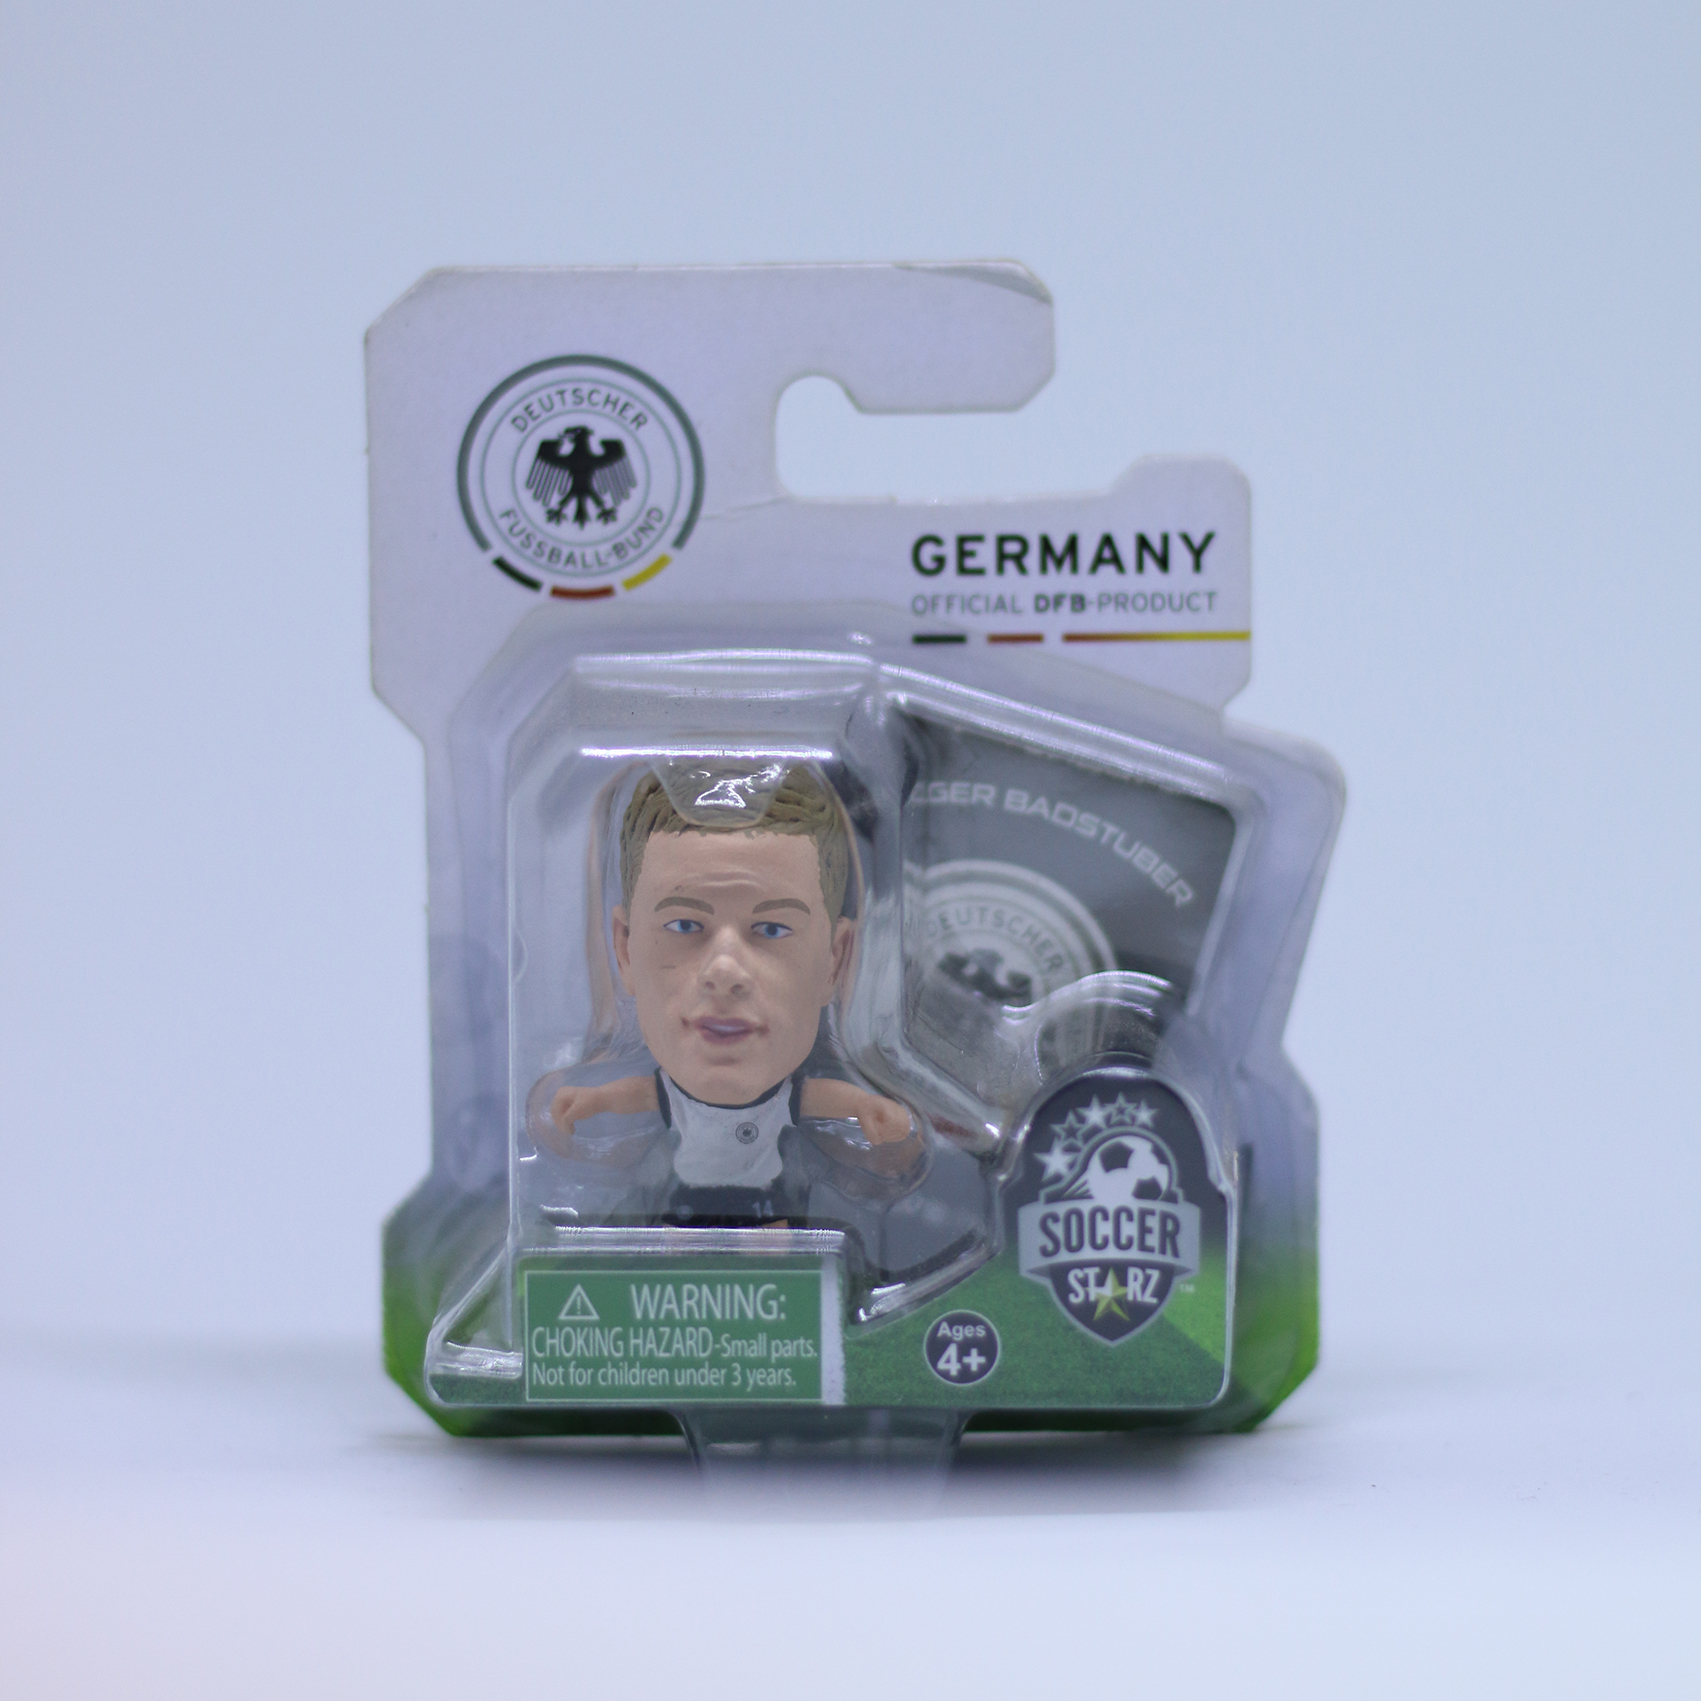 โมเดล นักฟุตบอล Holger Badstuber- Home Kit ลิขสิทธิ์แท้ GERMANY